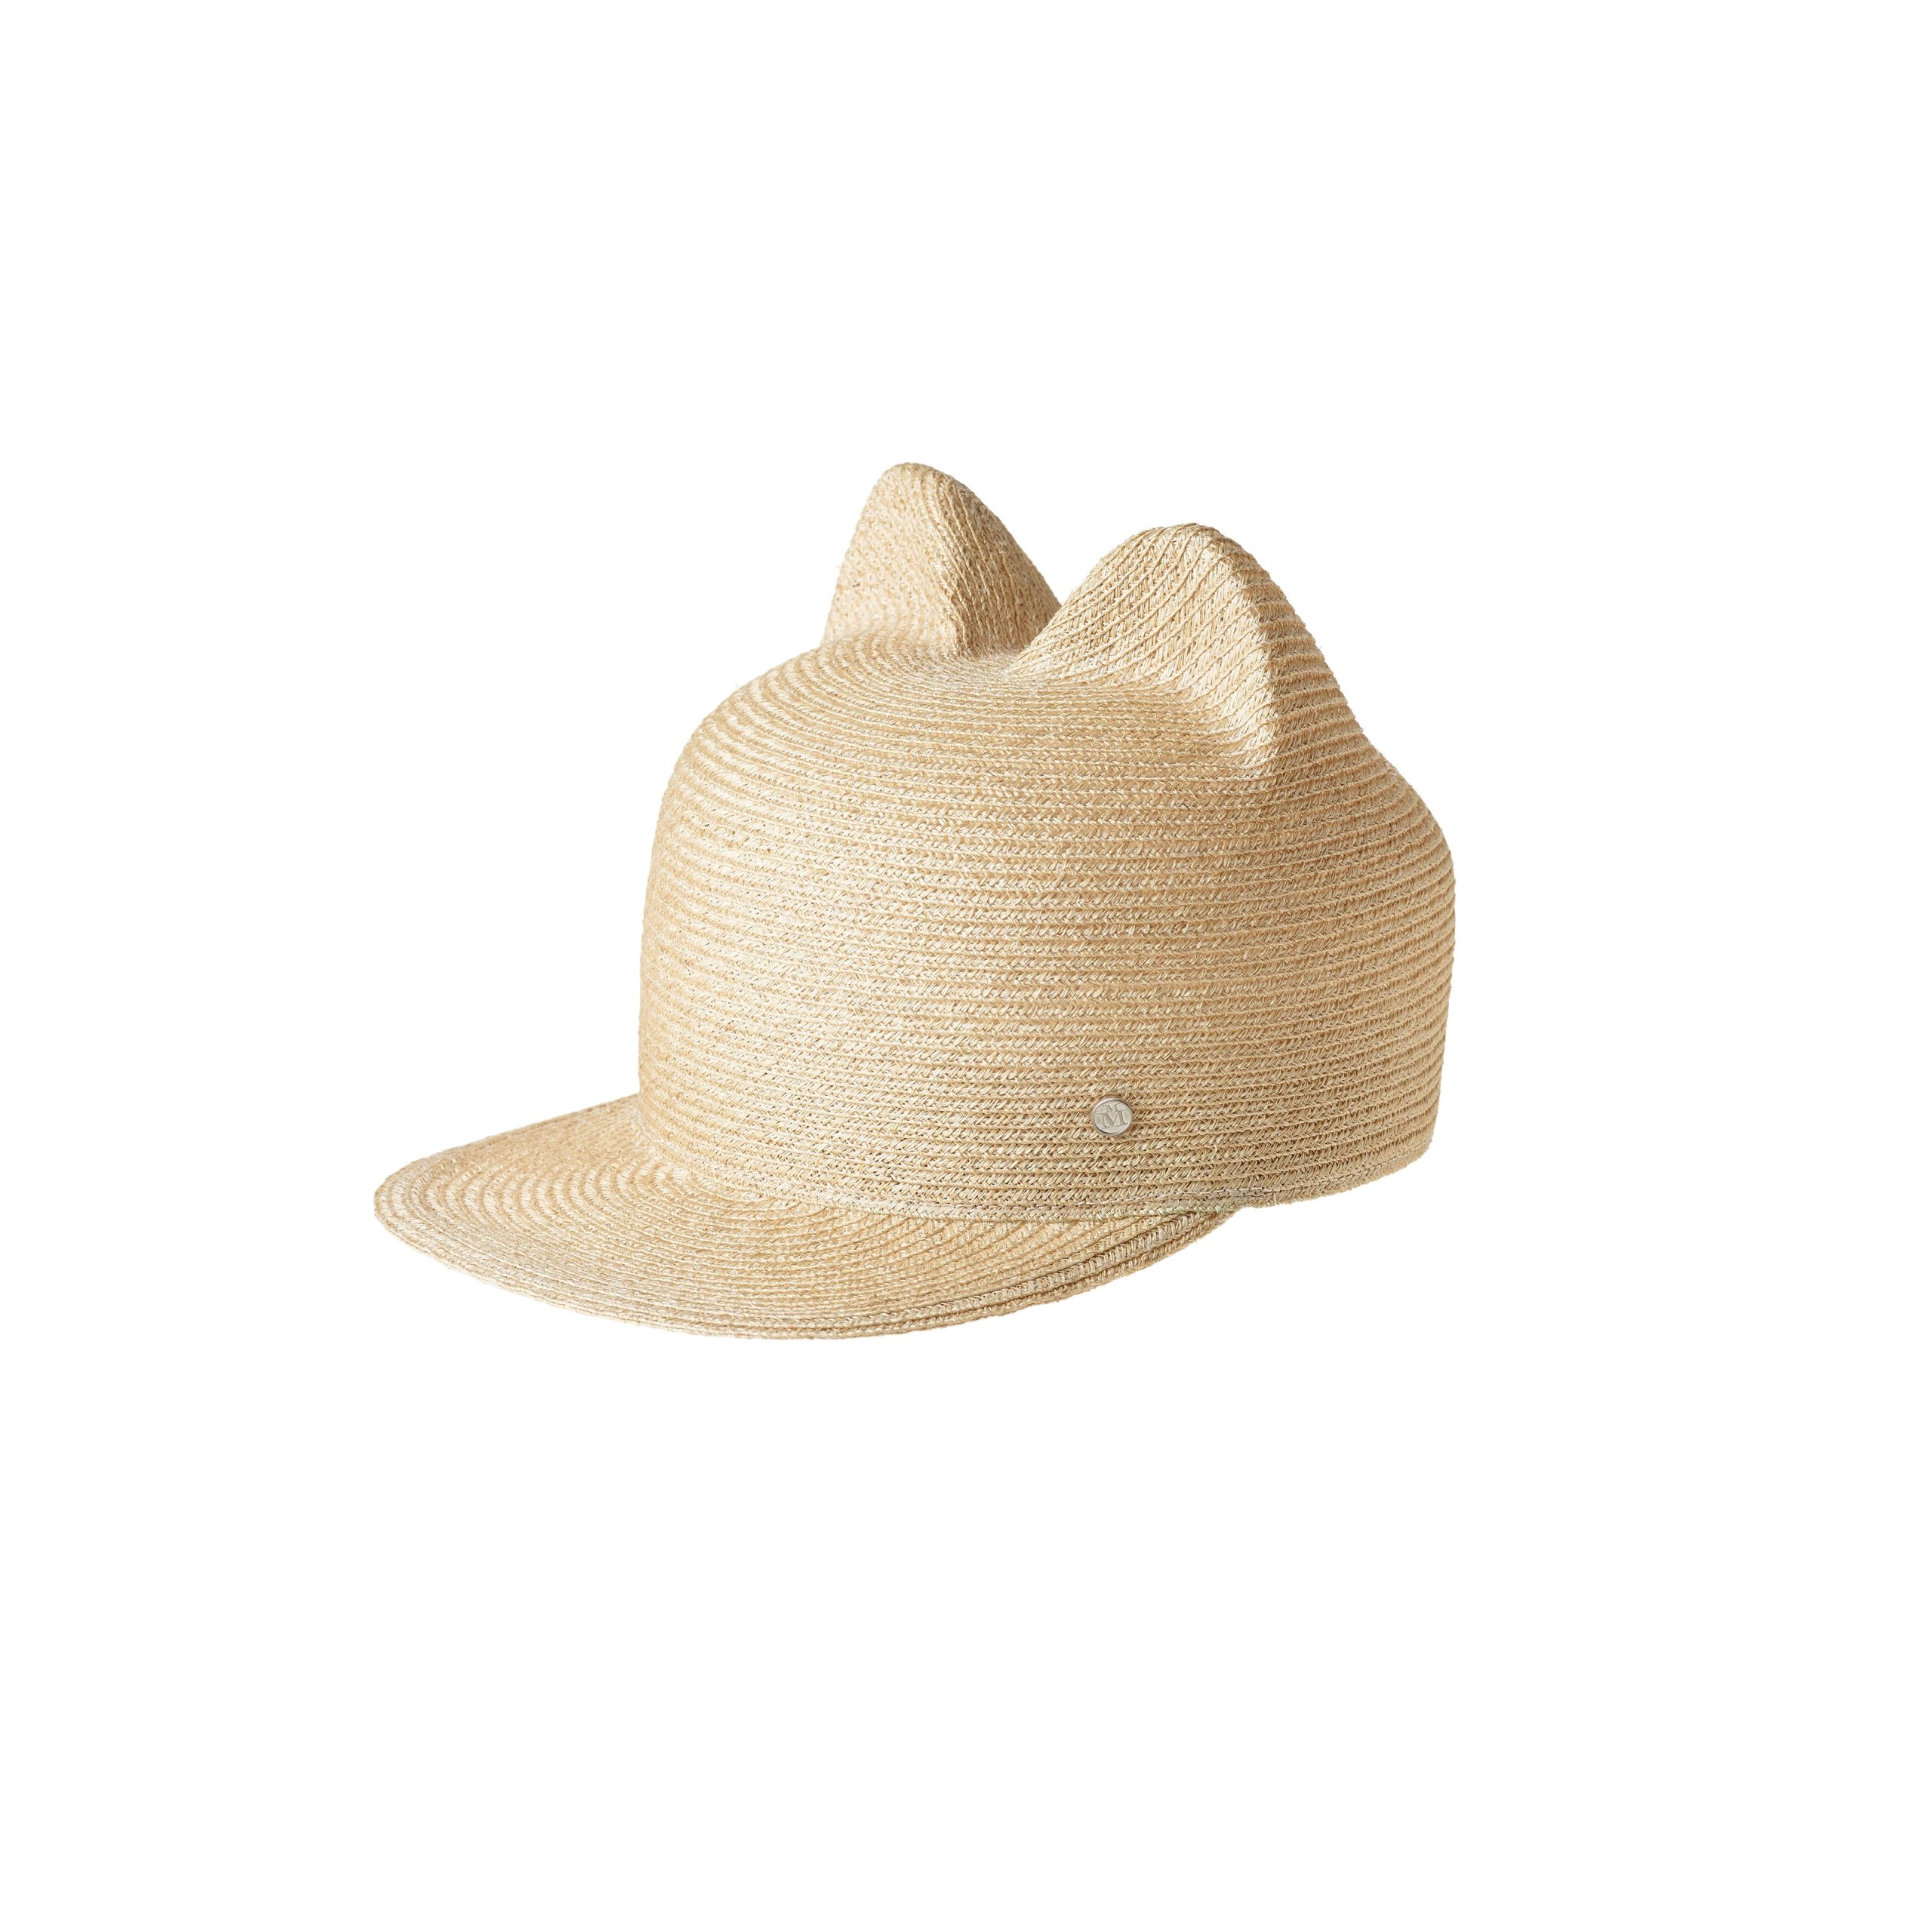 Natural canapa straw baseball cap